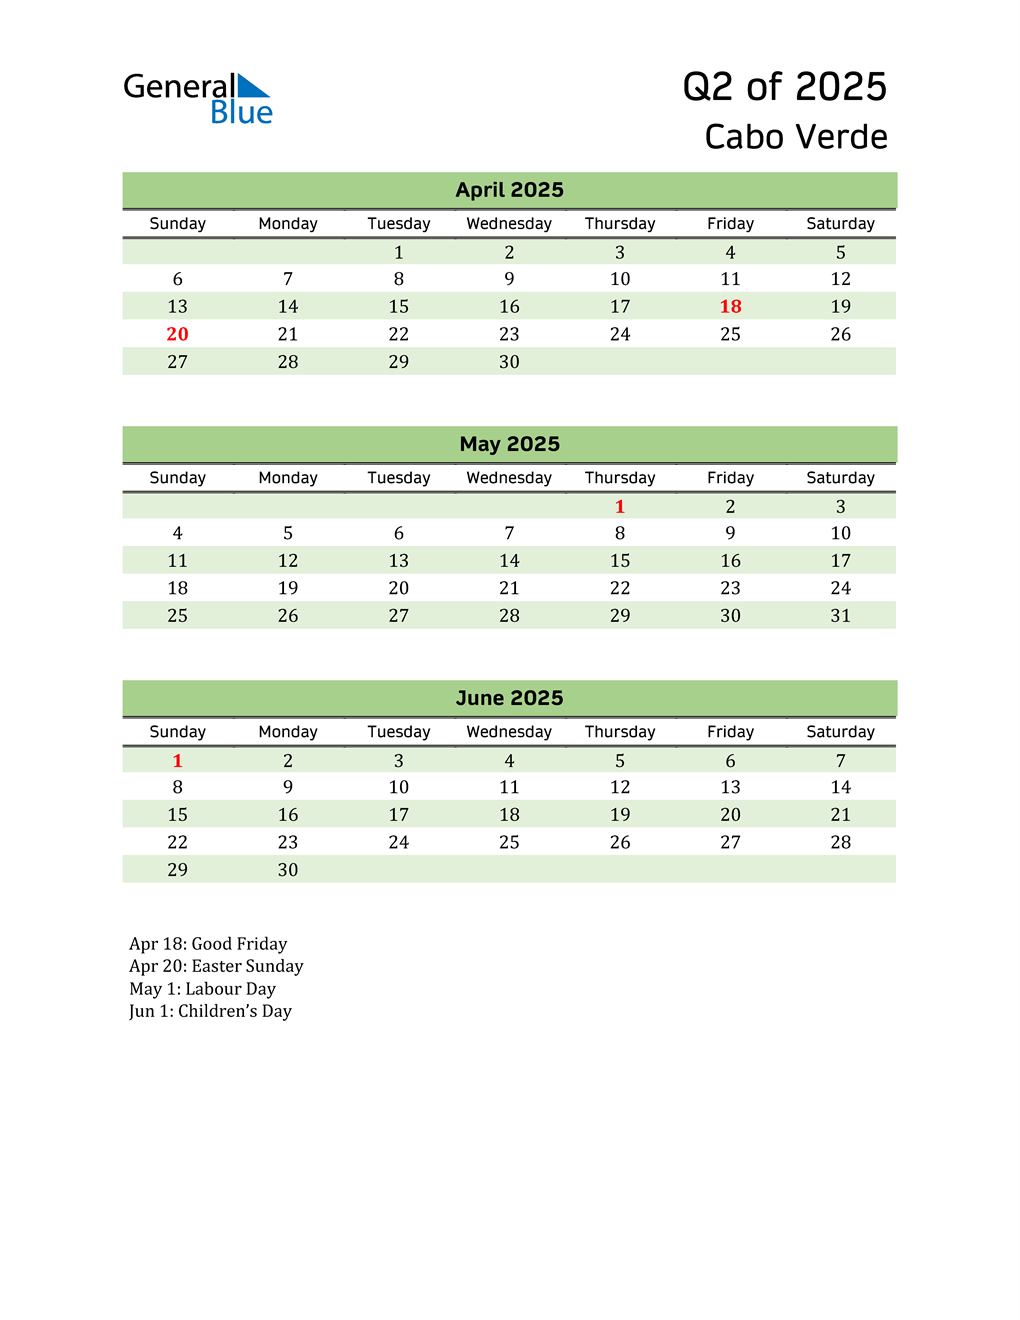  Quarterly Calendar 2025 with Cabo Verde Holidays 